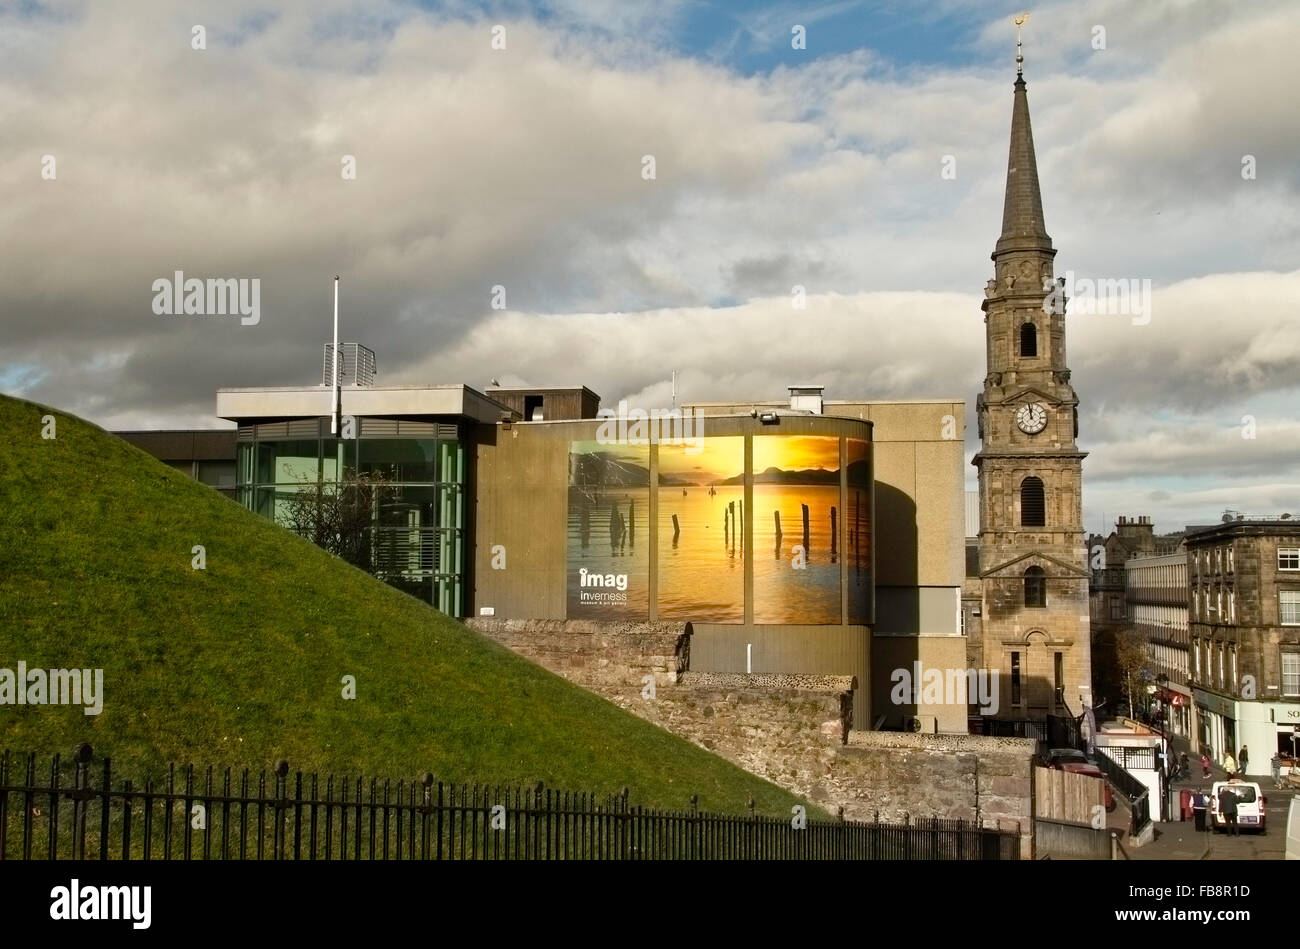 Inverness Kunst Galerie und Mautstelle Kirchturm, Inverness, Schottland. Stockfoto